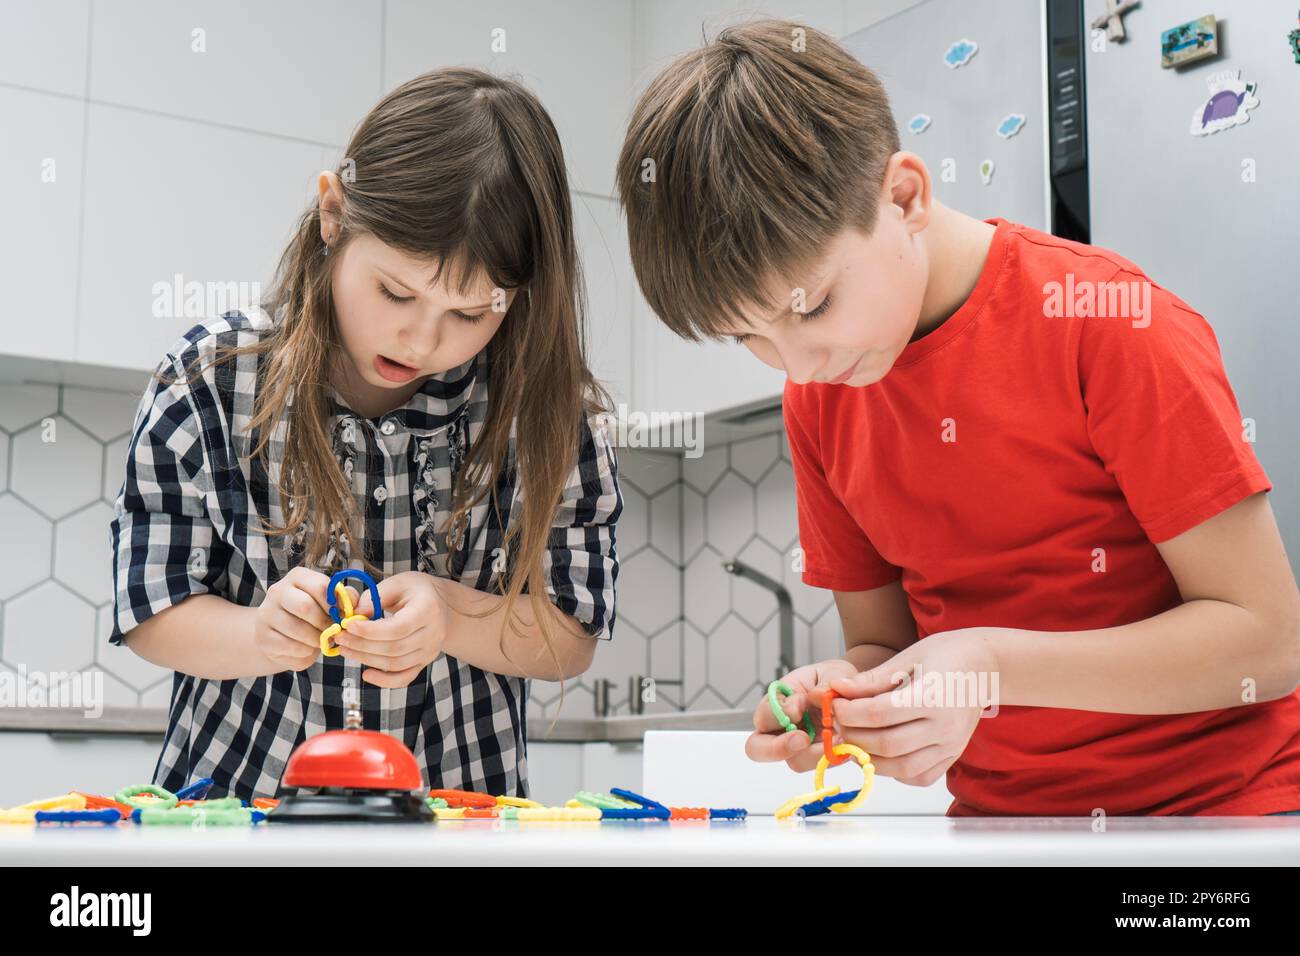 Les enfants jouent jouet constructeur debout au-dessus de la table de cuisine et regardant vers le bas. Garçon et fille collectent les détails en plastique de lego. Banque D'Images